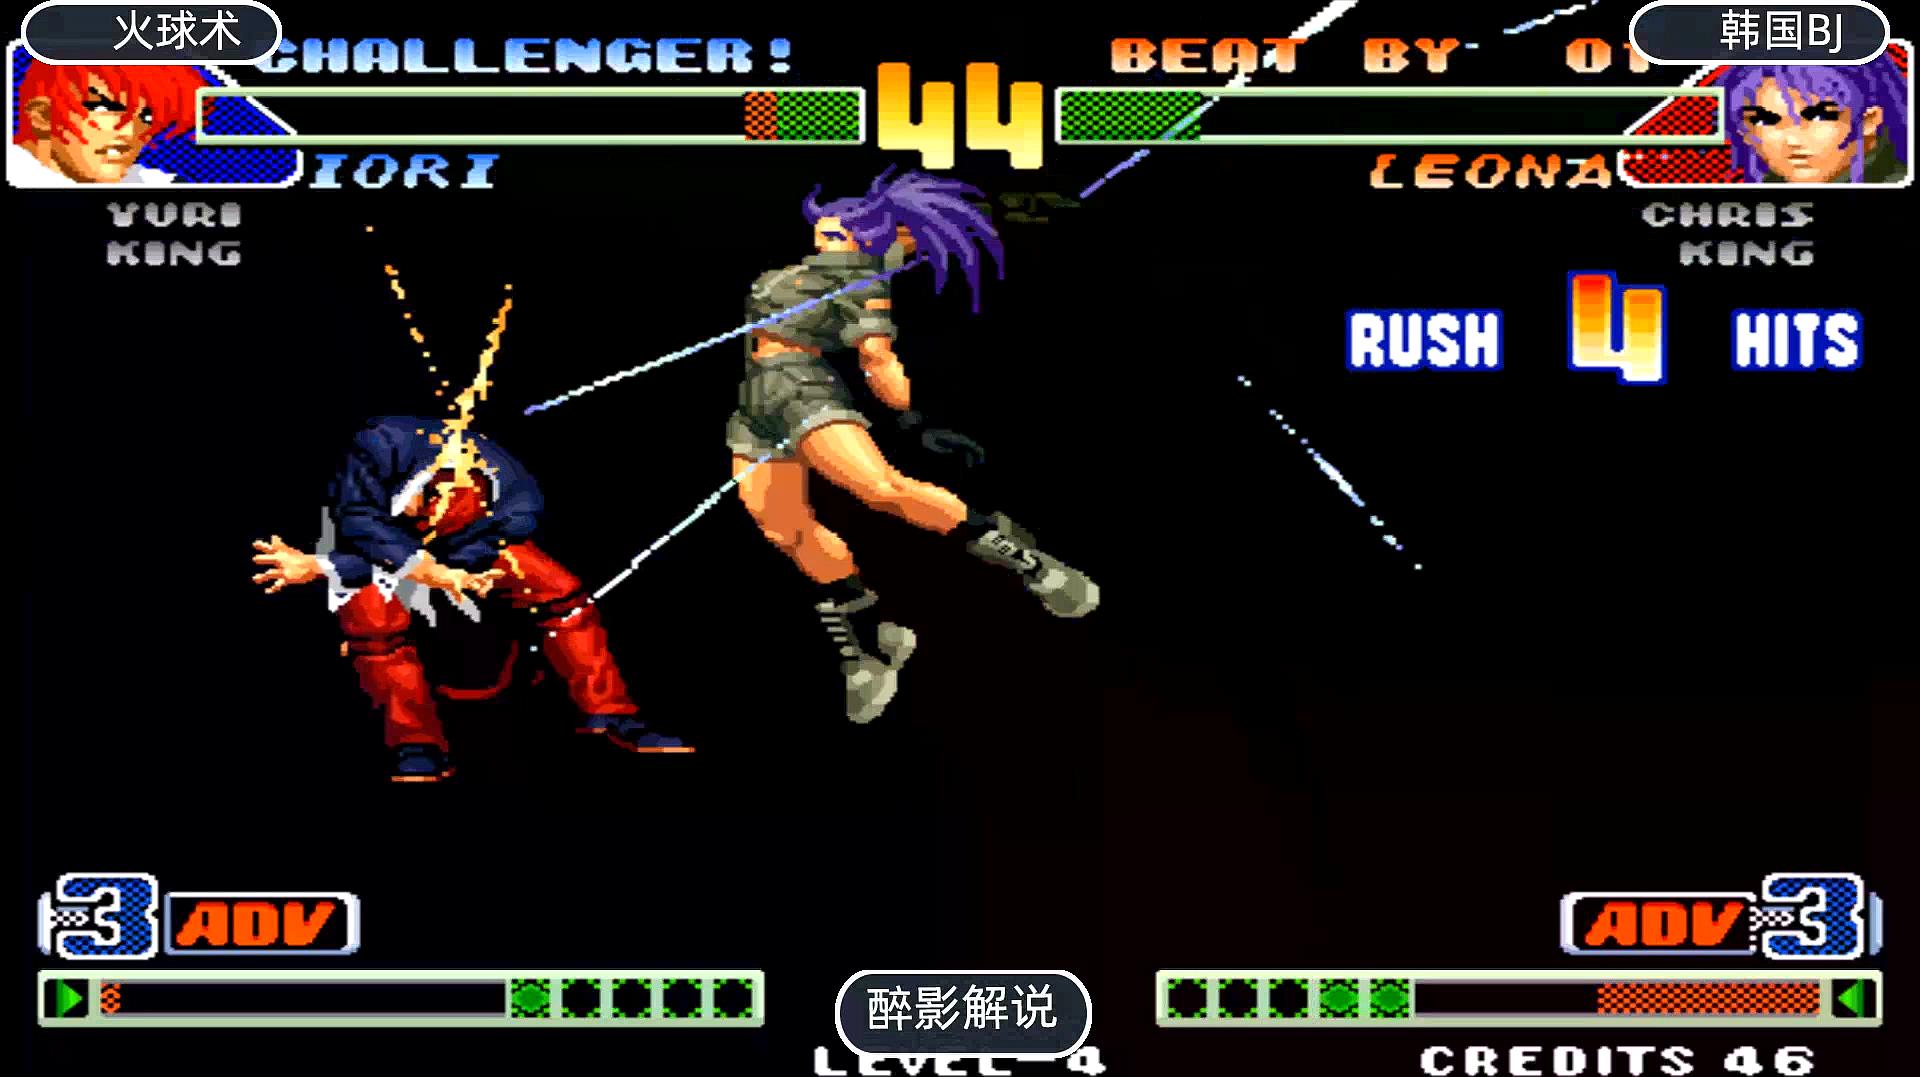 醉影街机游戏解说拳皇98之莉安娜的视频合辑